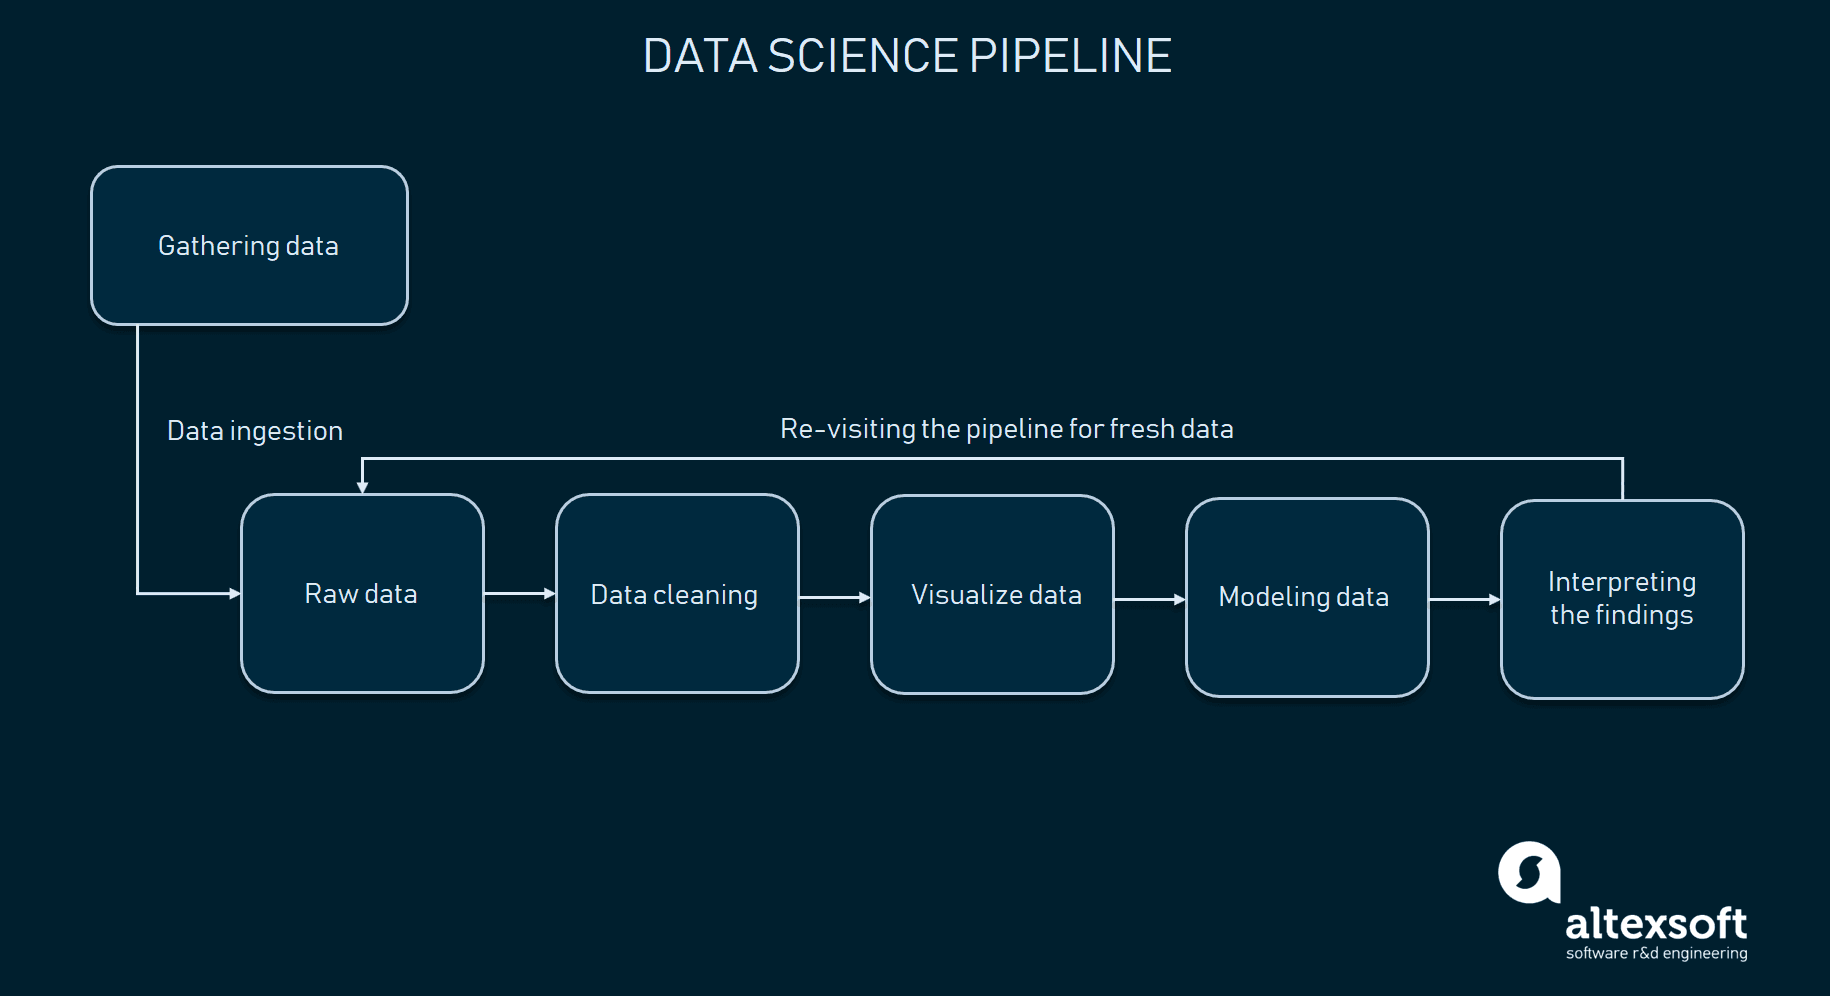 Data science pipeline